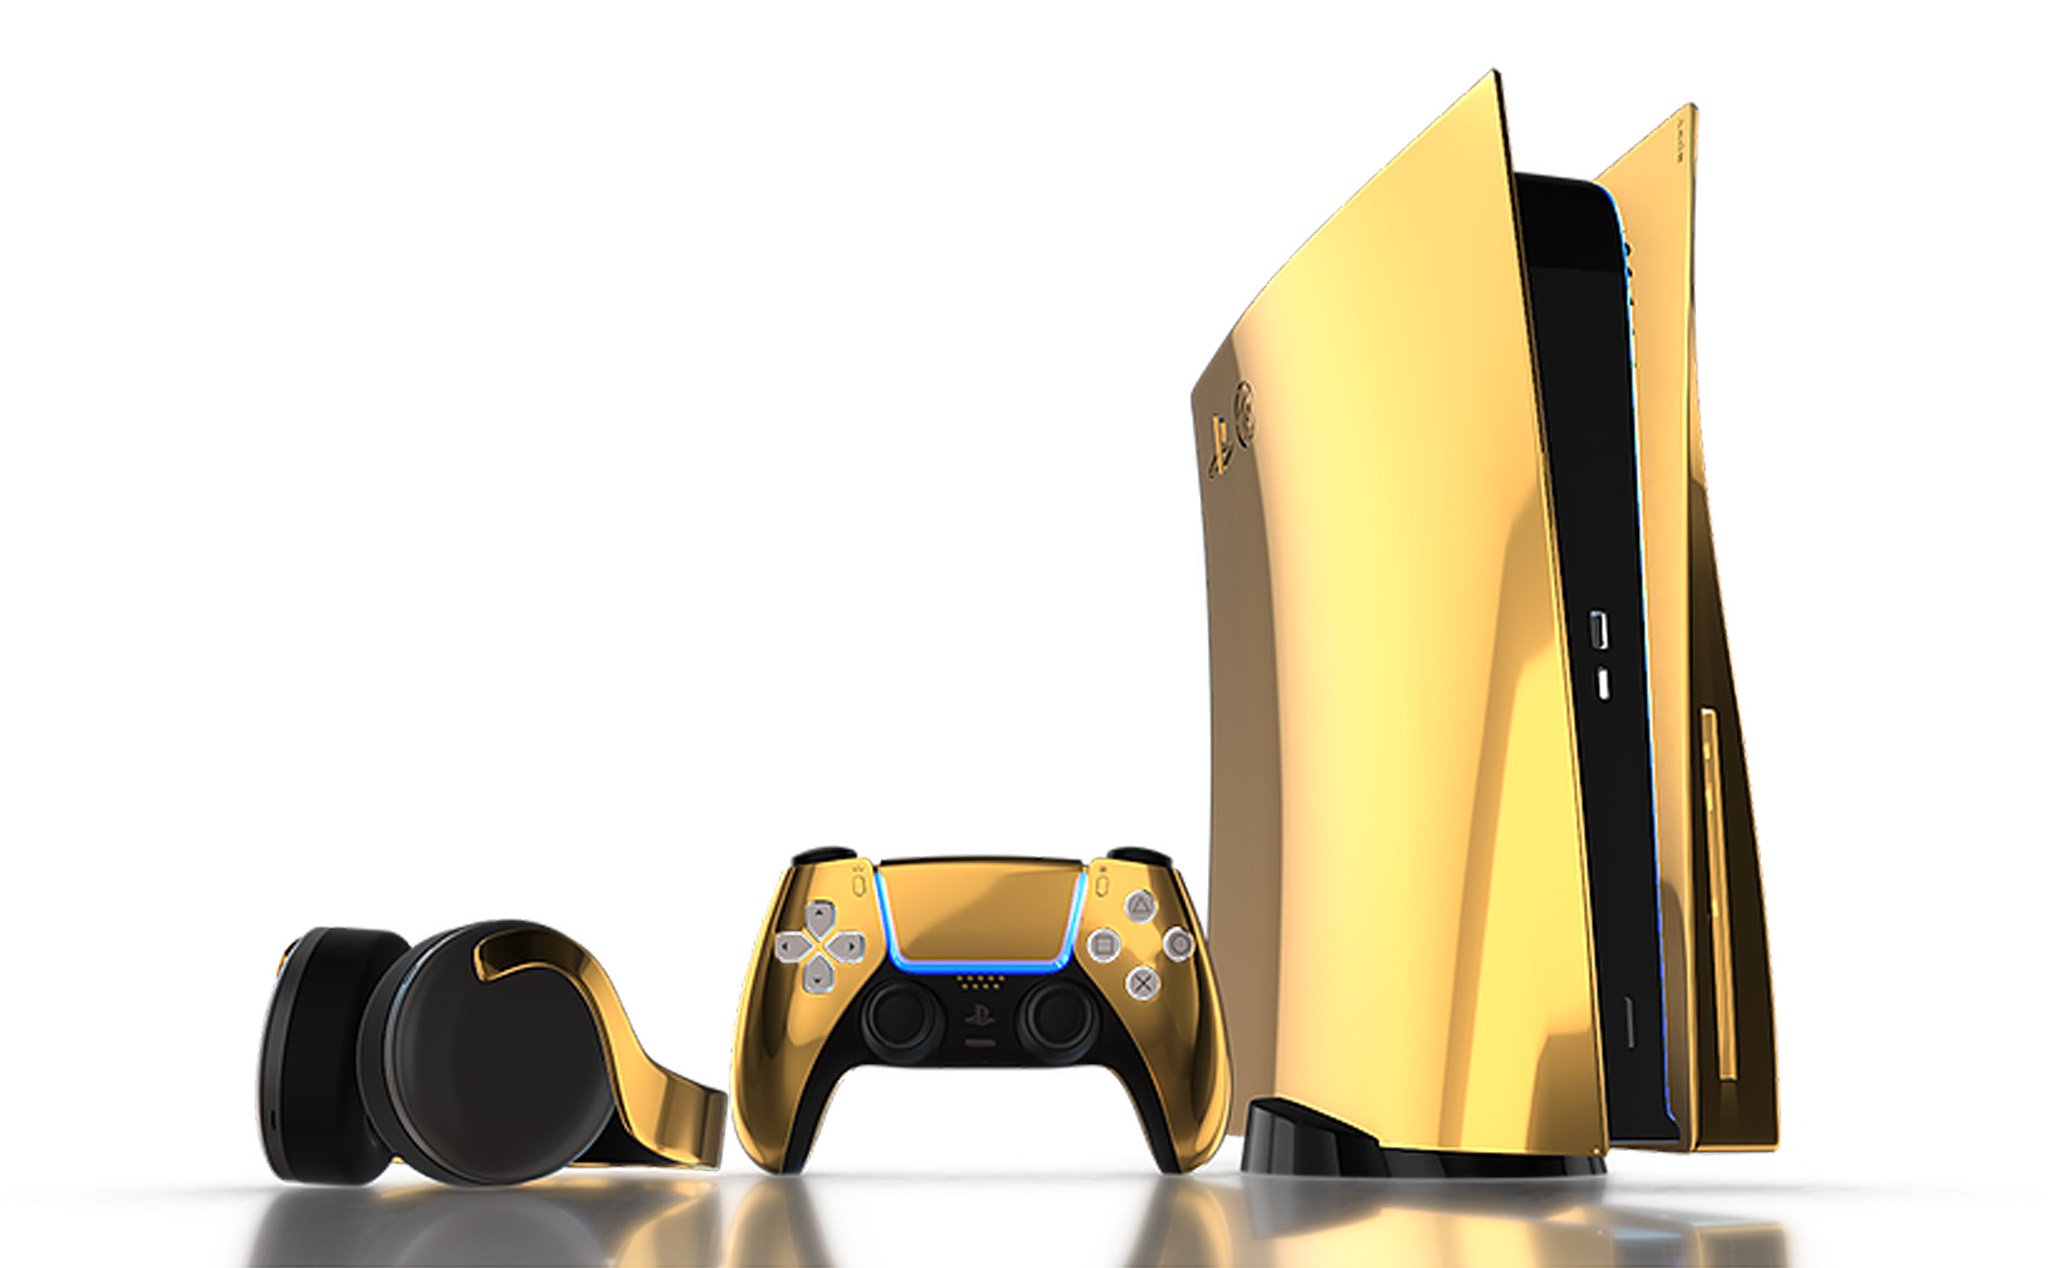 PS5 mạ vàng: PS5 mạ vàng là một sản phẩm siêu độc đáo và hiếm có. Nếu bạn là tín đồ của game và đam mê những sản phẩm độc đáo, hãy xem những hình ảnh về PS5 mạ vàng trên mạng. Đây là cơ hội để bạn được chiêm ngưỡng sản phẩm độc đáo này.